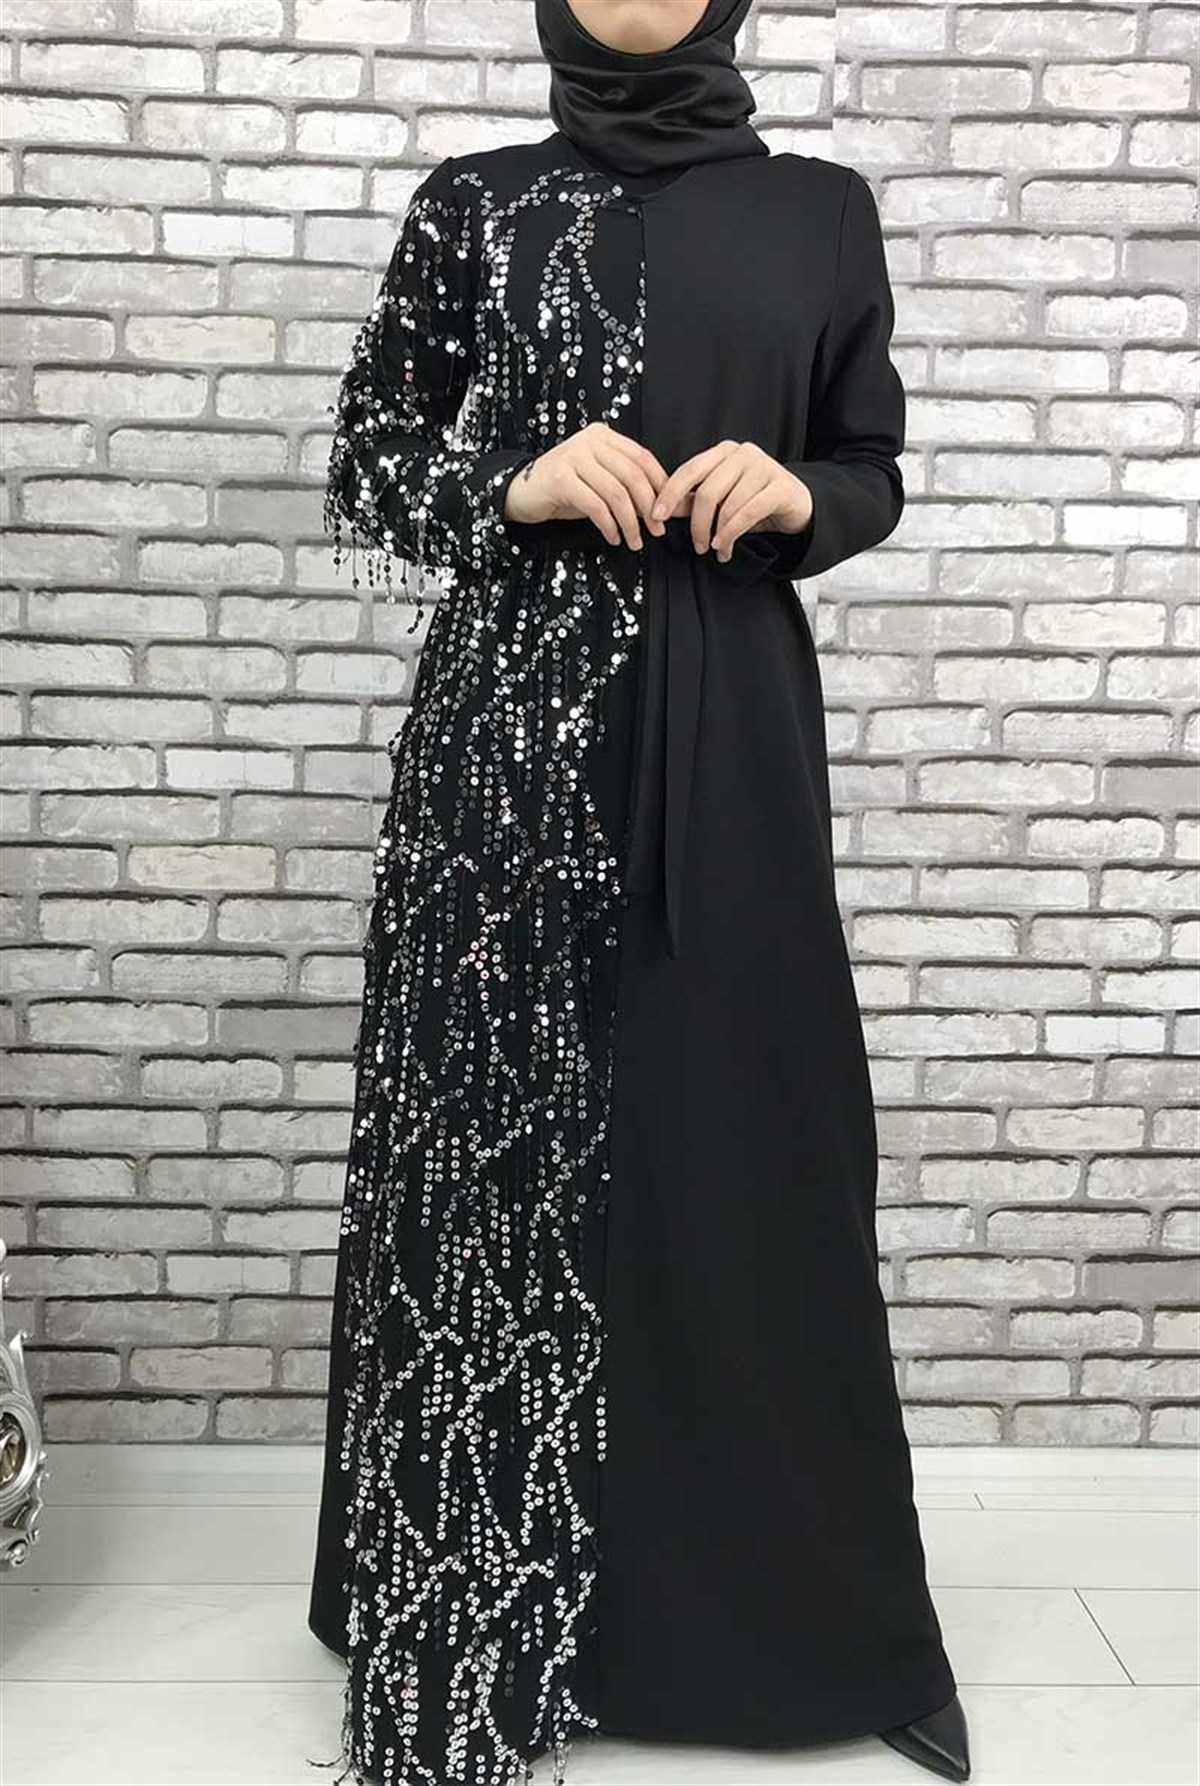 Gizemsmoda Pullu Tesettür Abiye Elbise Modelleri